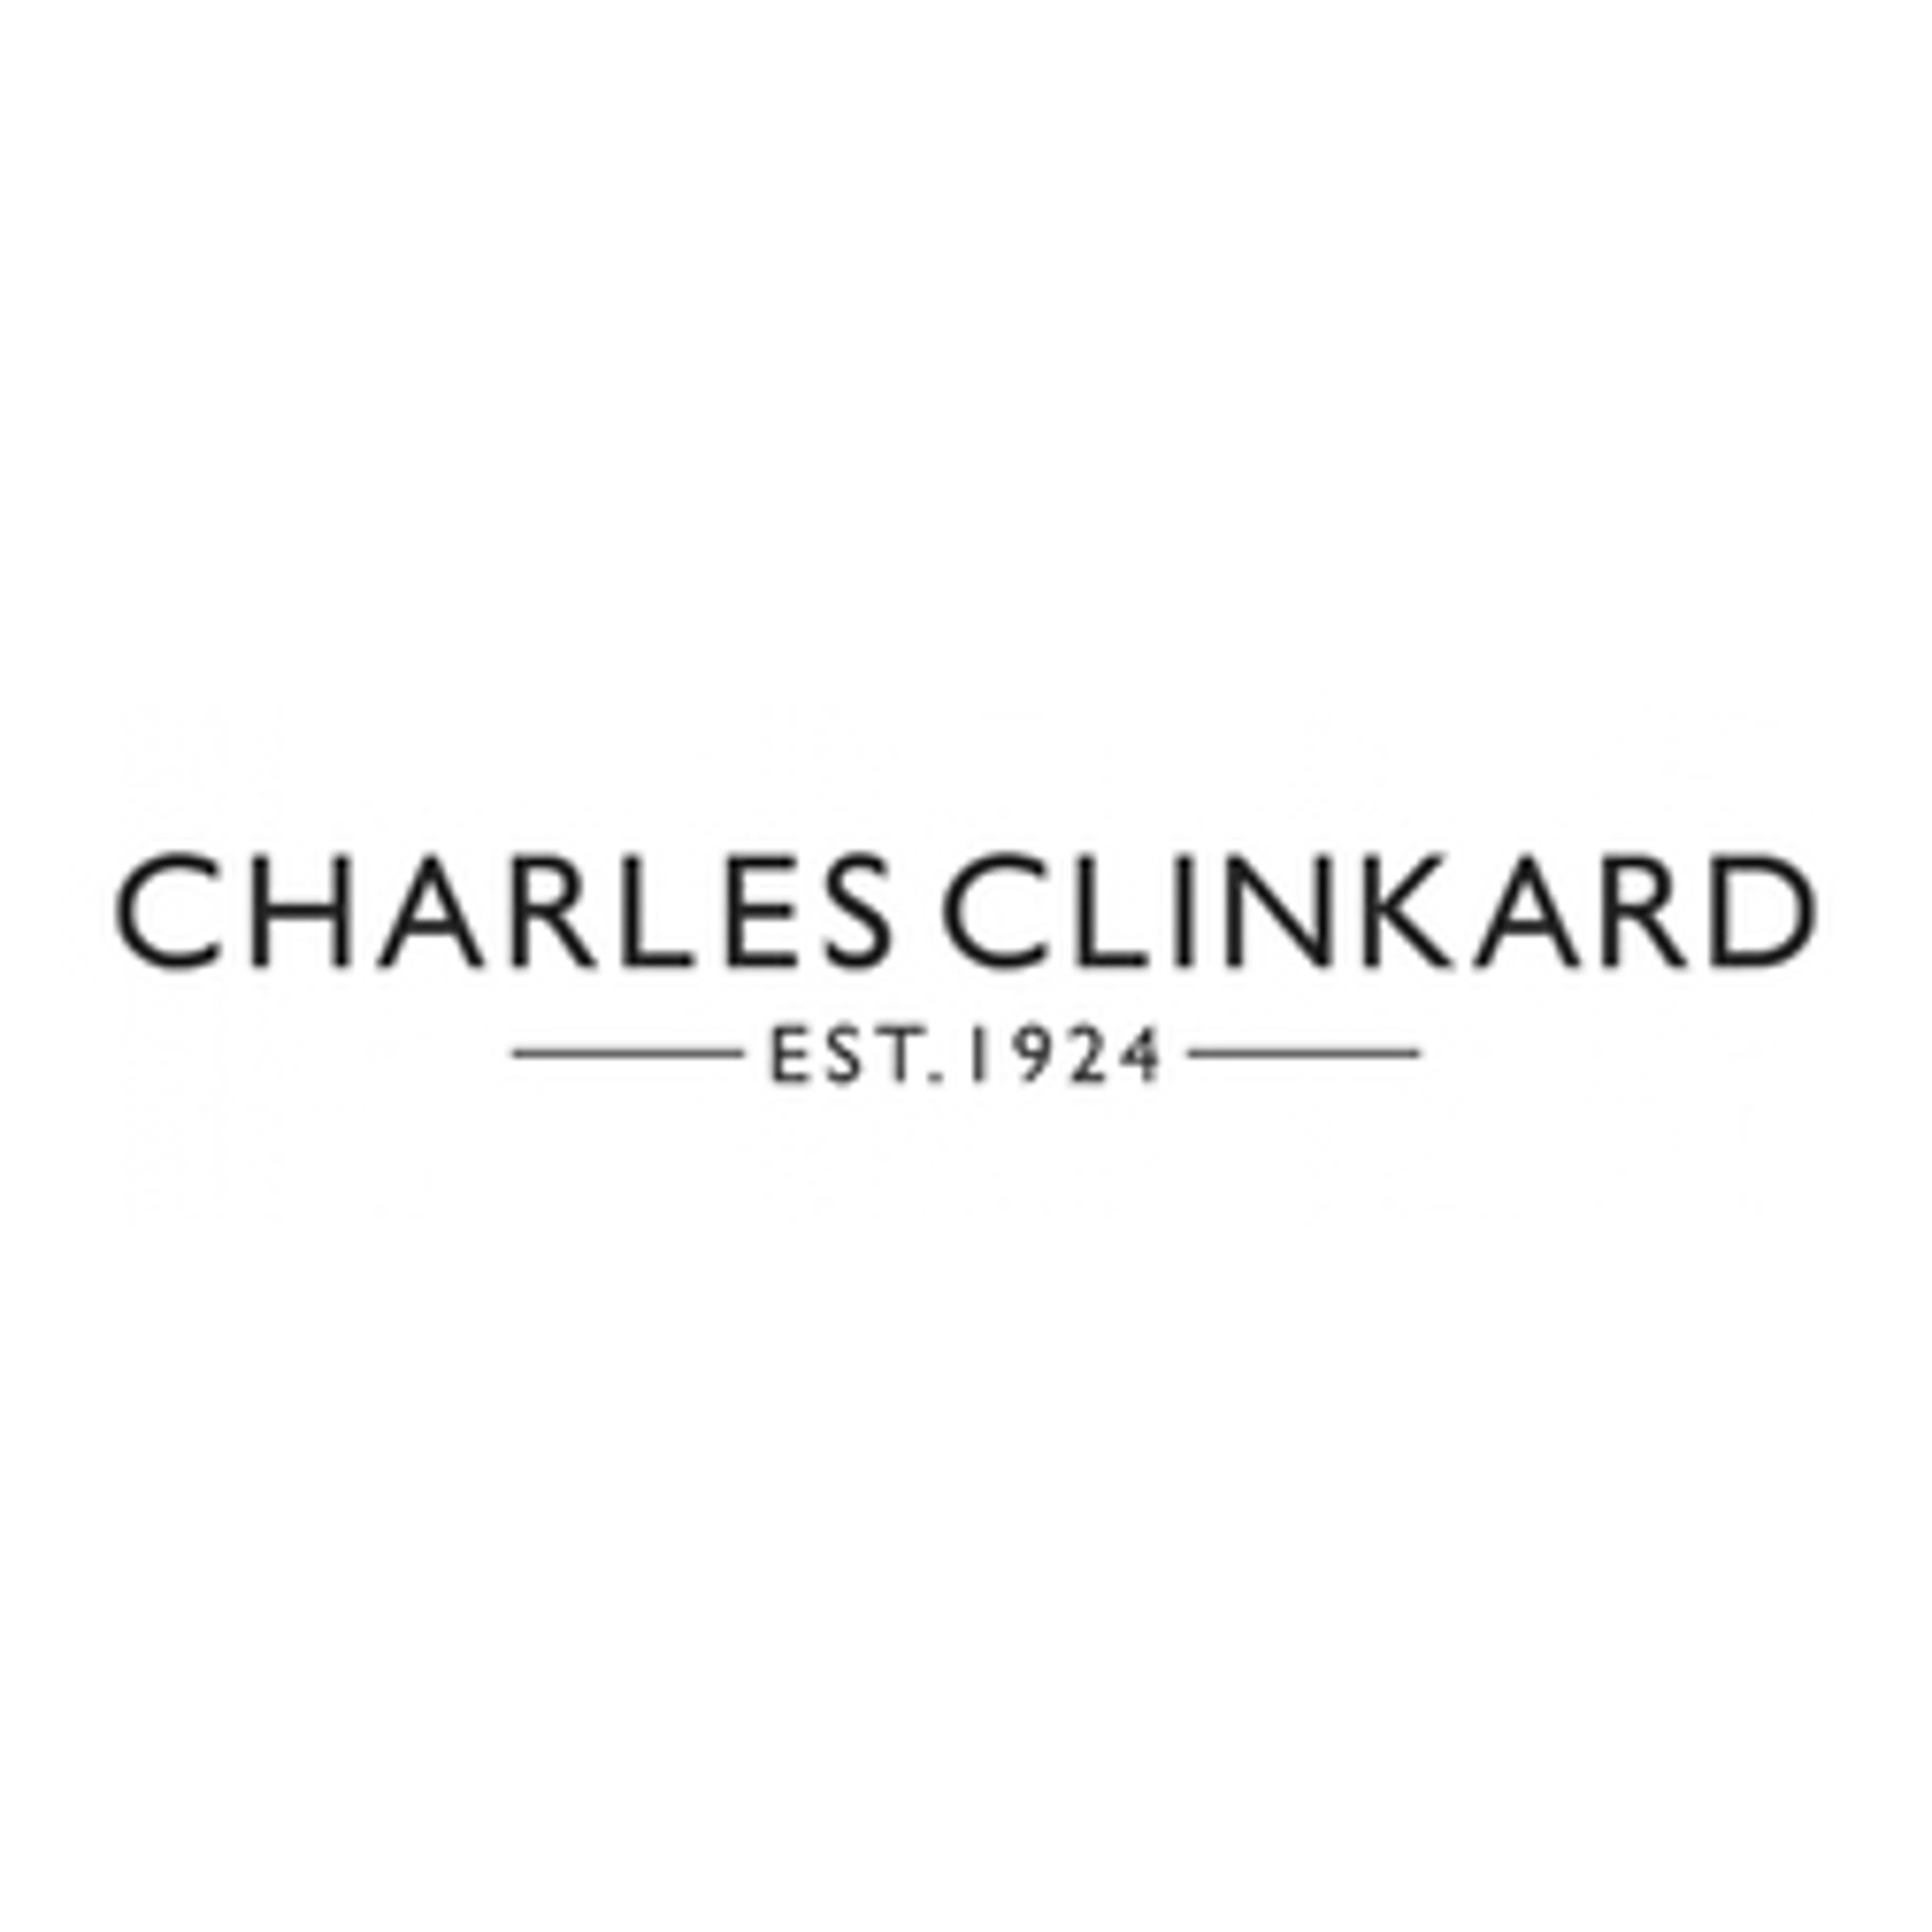  Charles Clinkard 